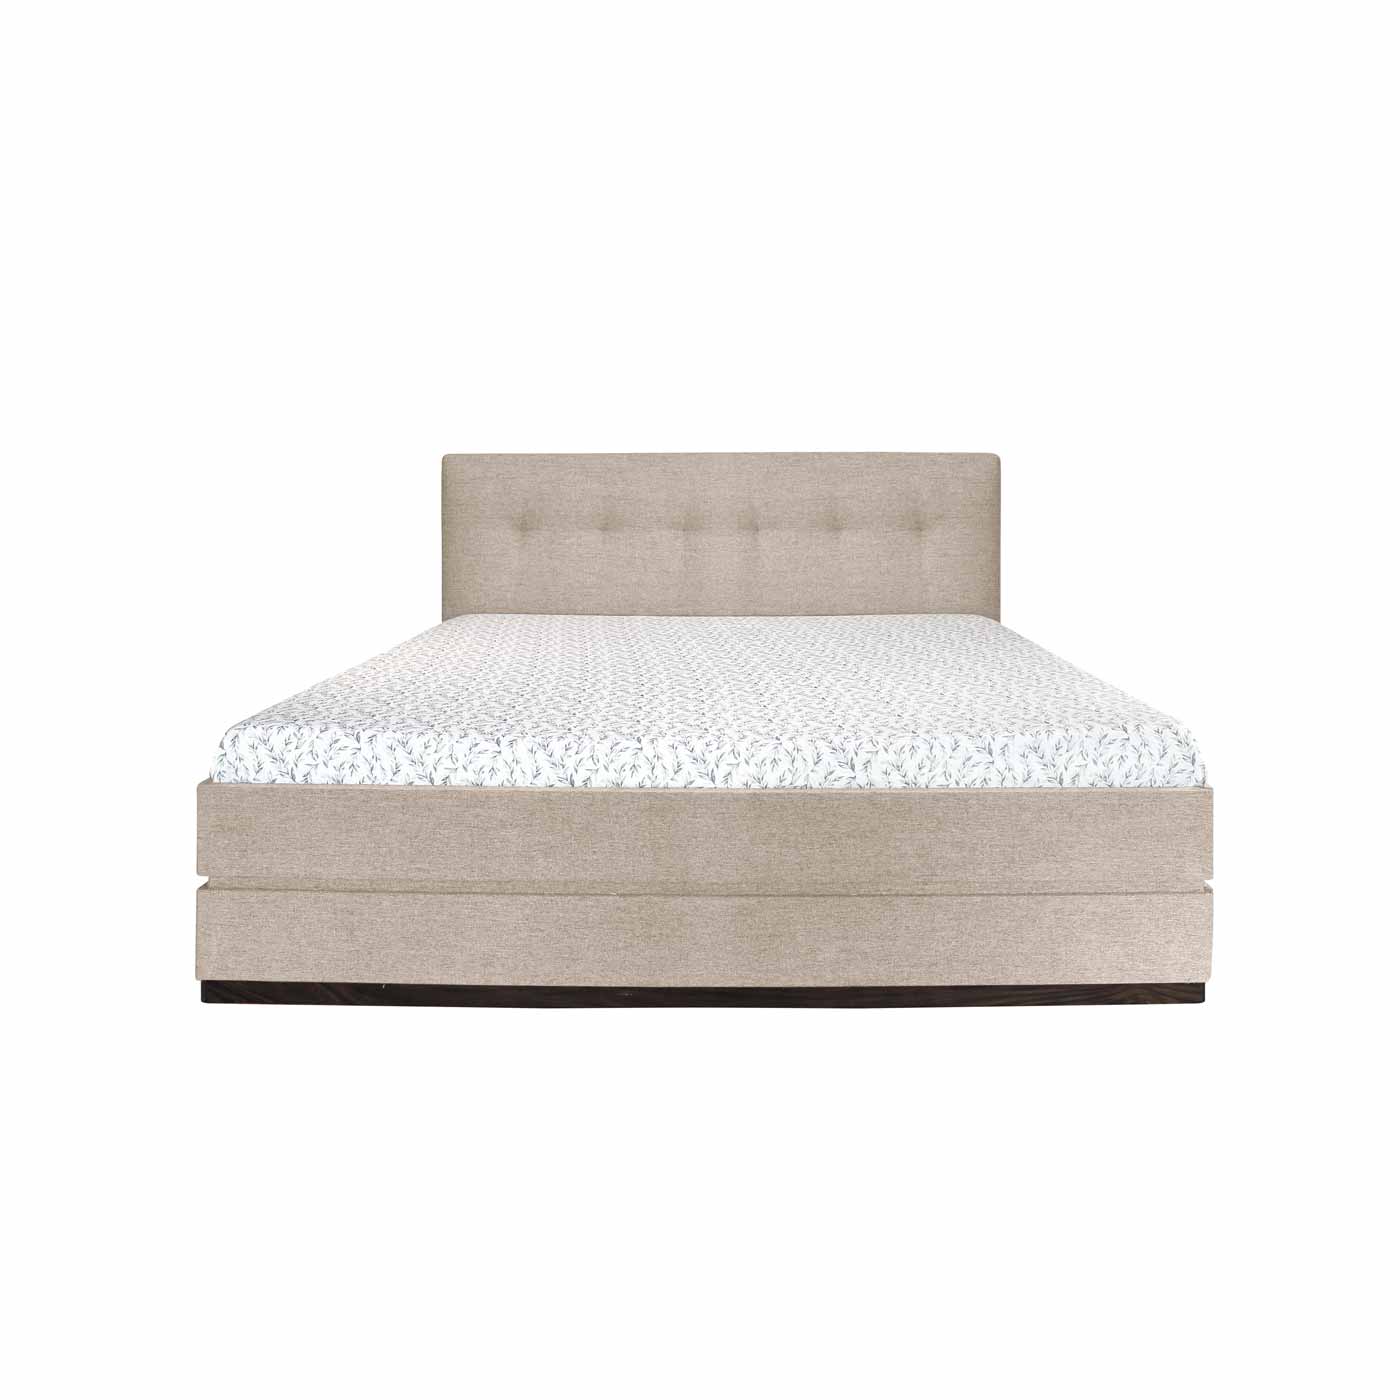 Merano Single Bed